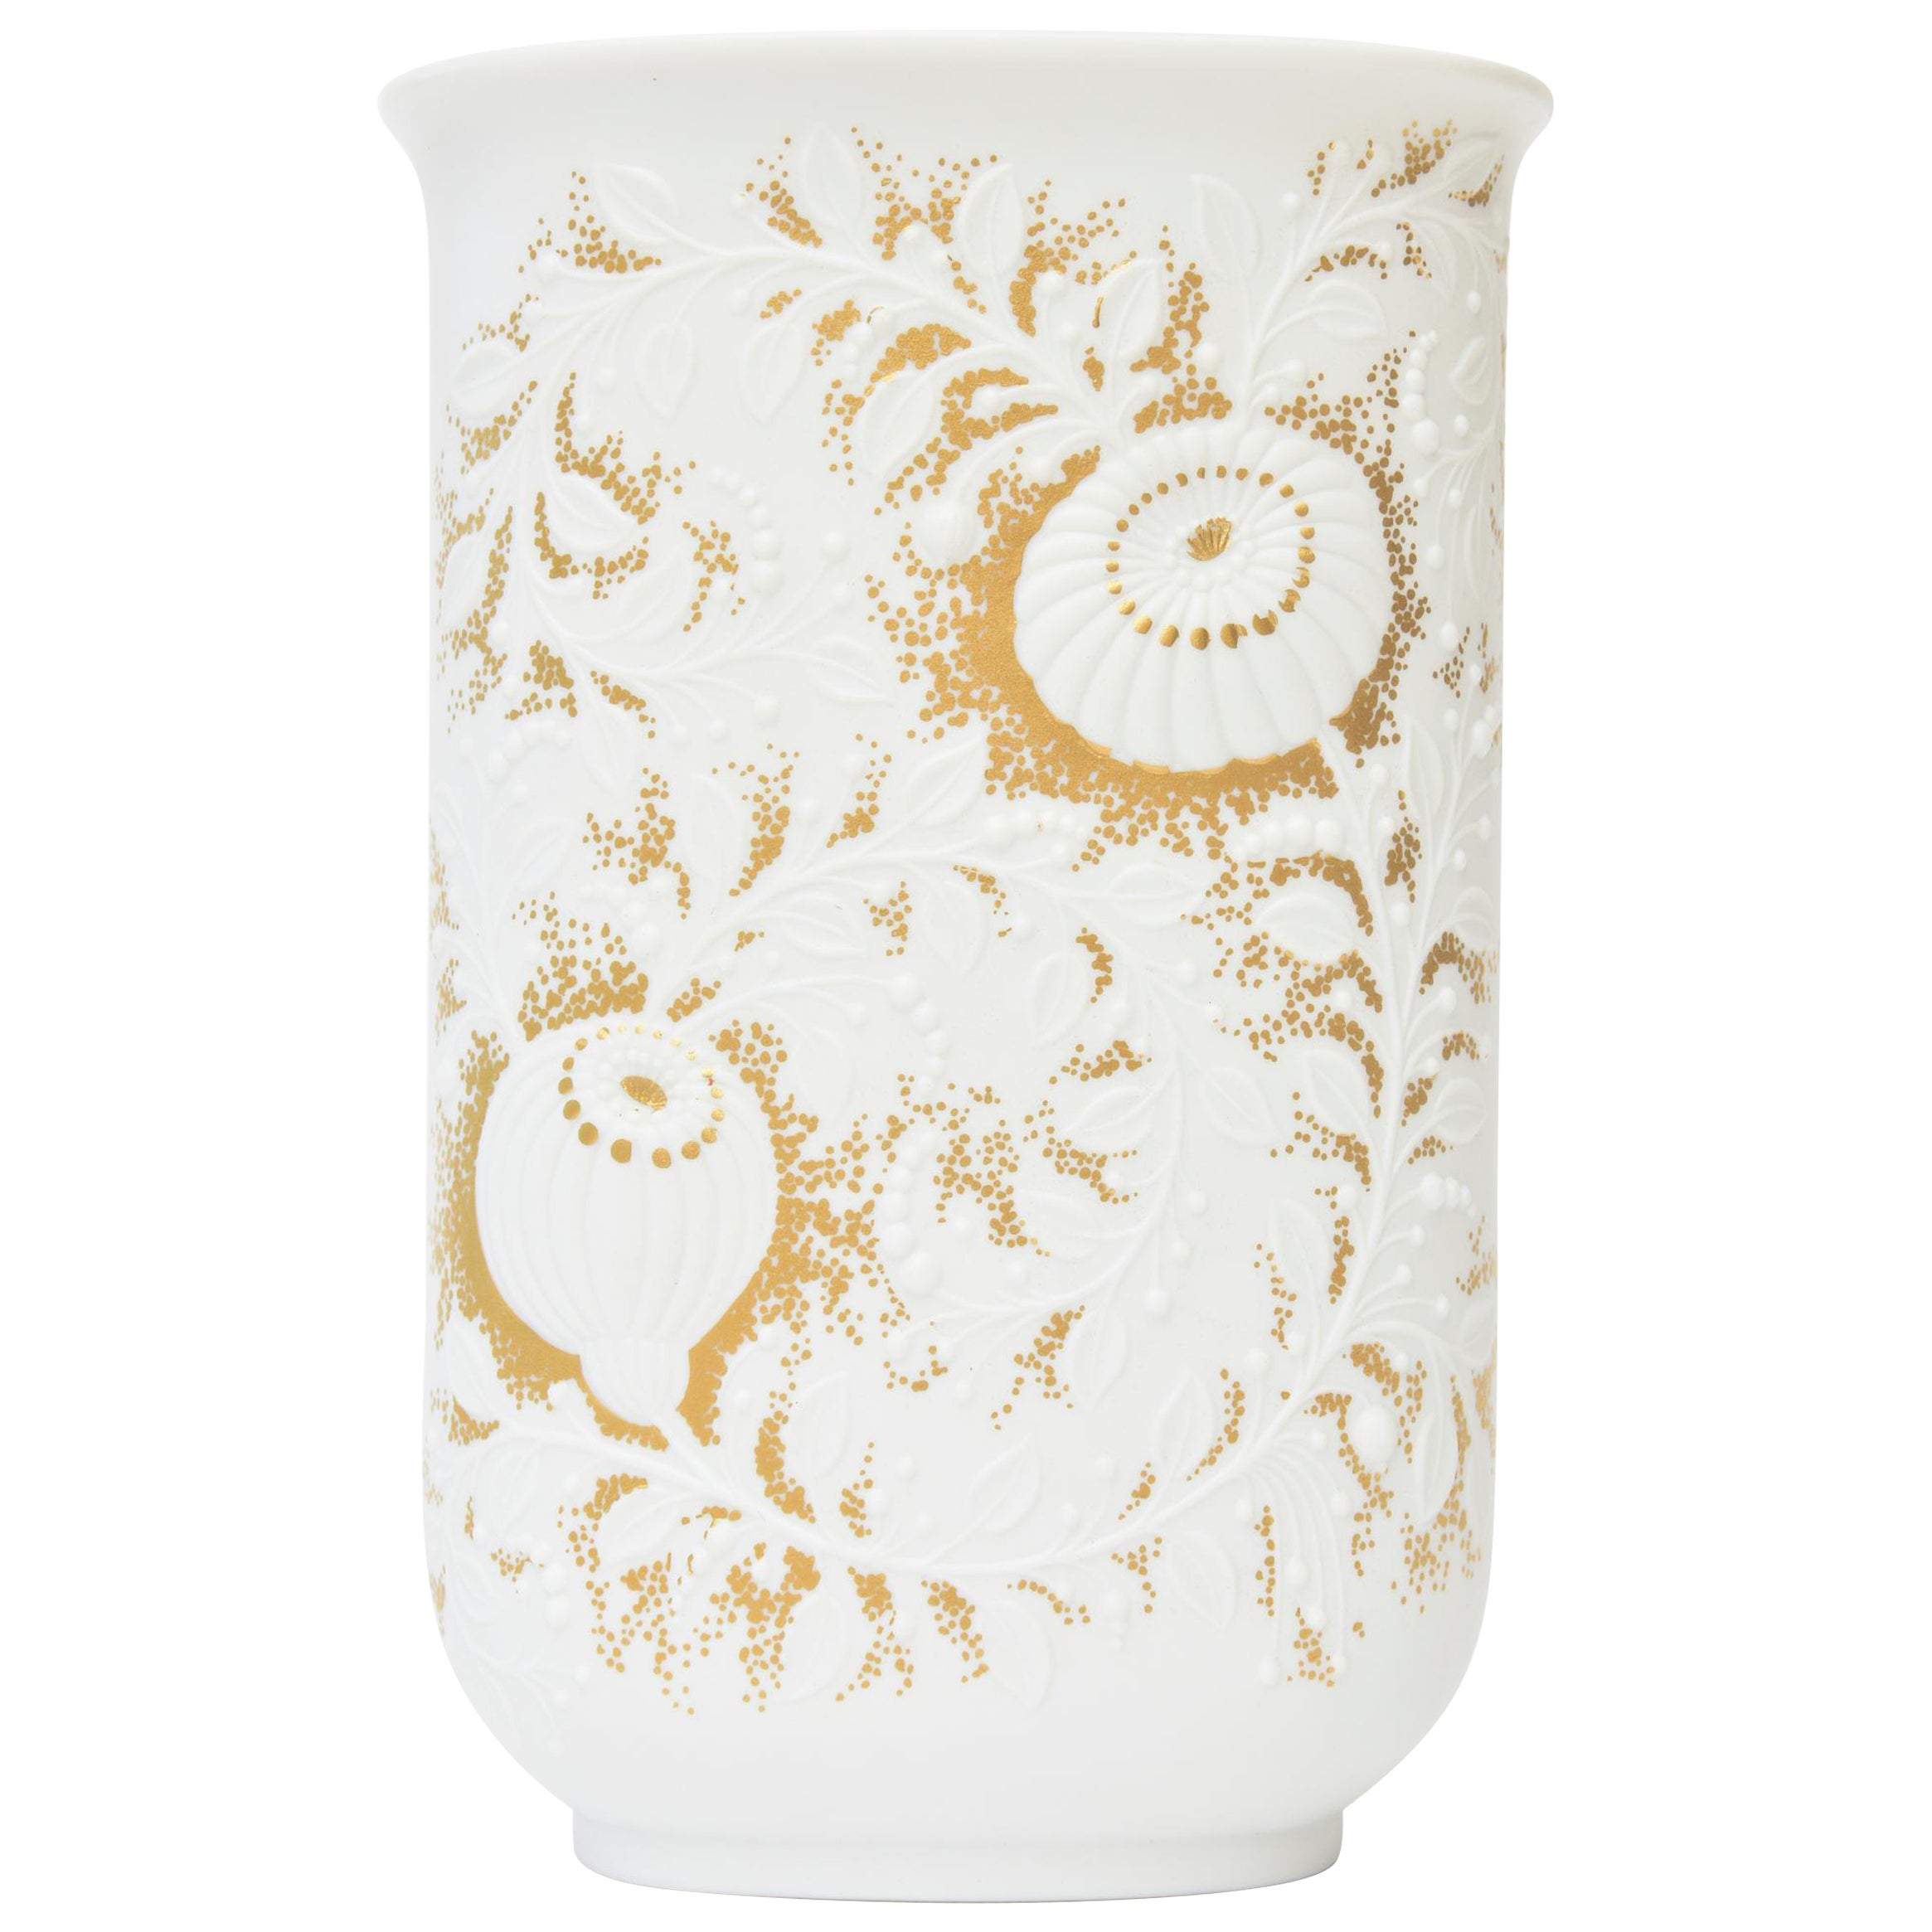 Jarrón de porcelana blanca y dorada firmado por Kaiser con flores aplicadas con textura Años 60